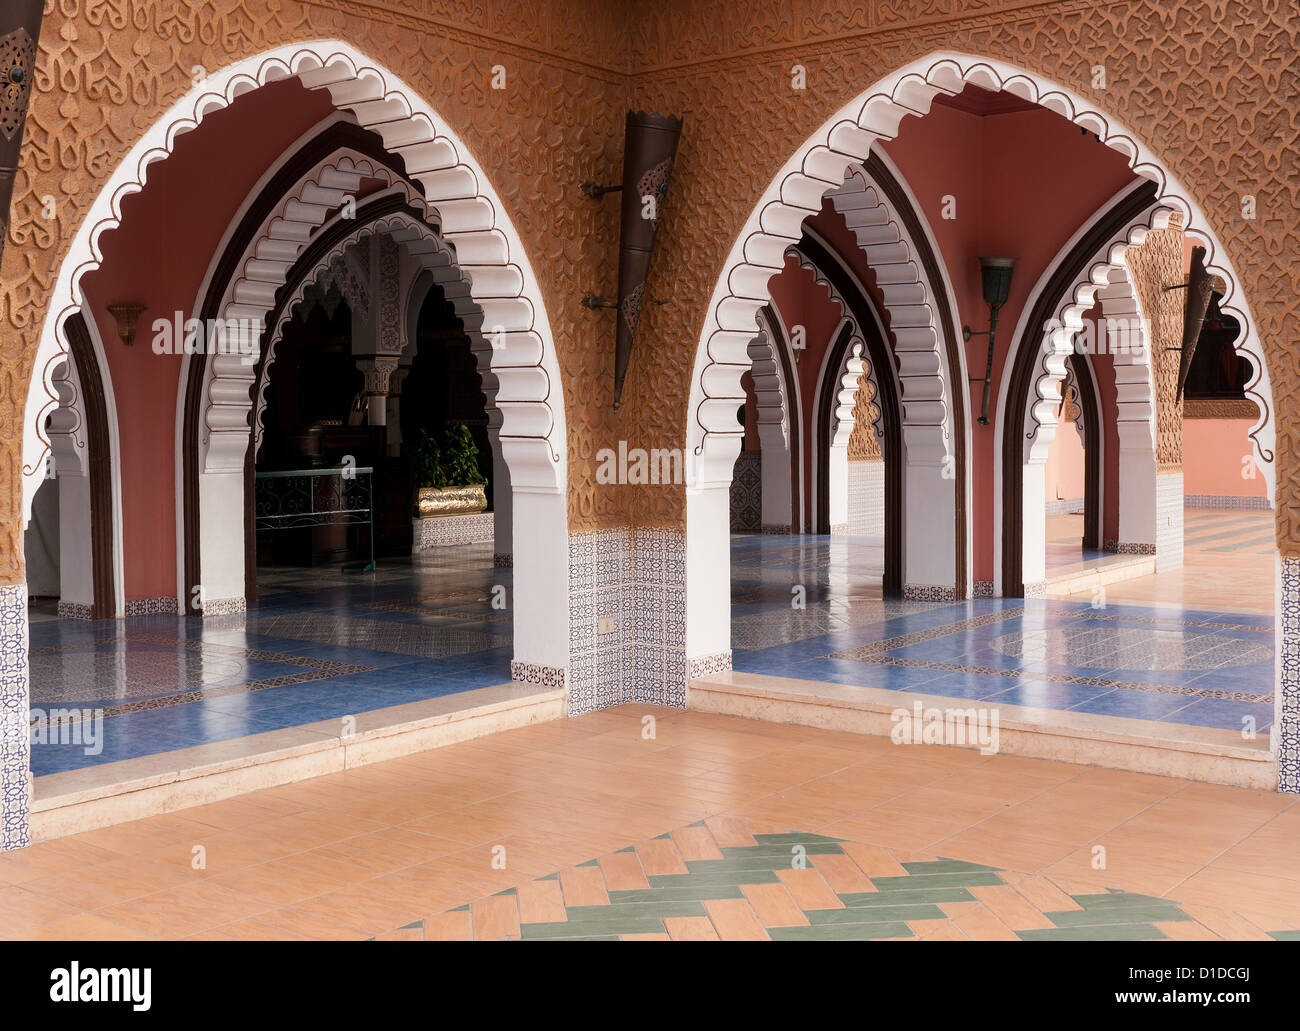 Arcades à l'intérieur de Fantasia, un centre de divertissement à Charm El Cheikh, Egypte Banque D'Images